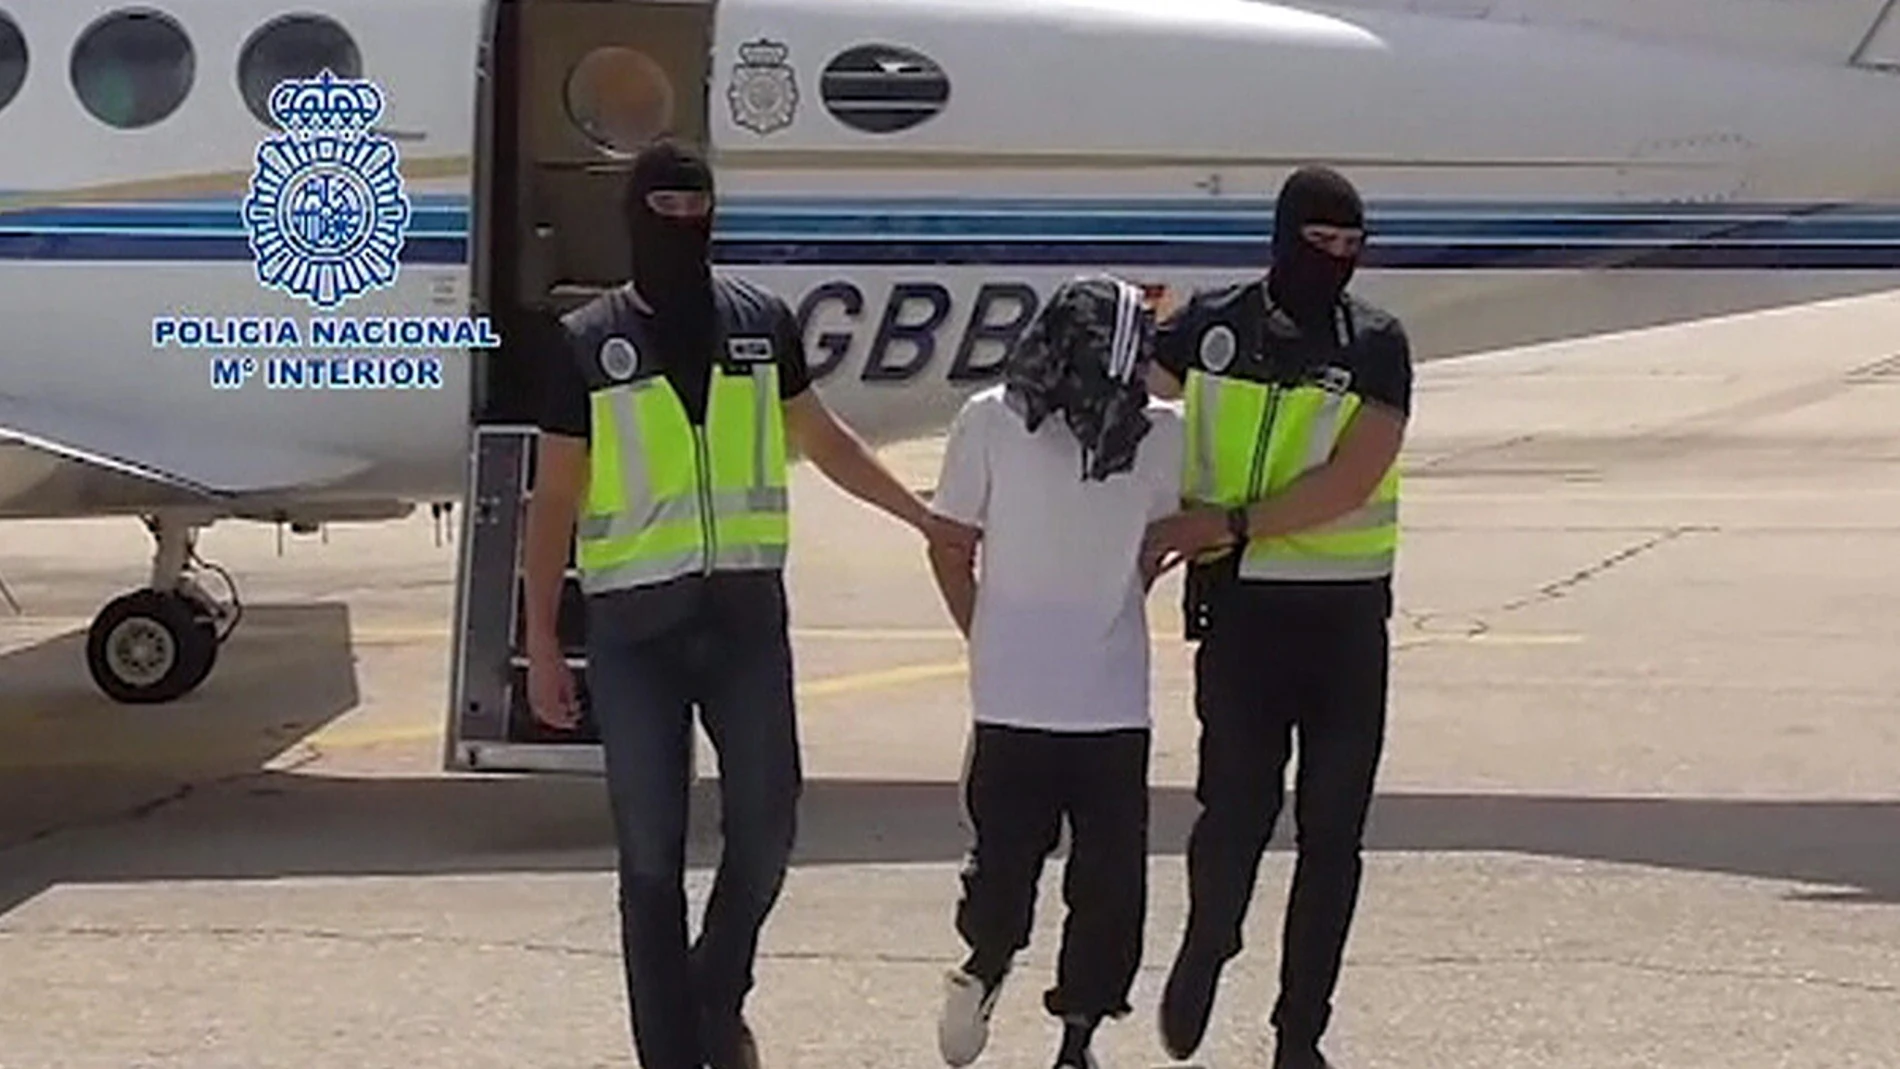 Imagen de un vídeo facilitado por la Policía Nacional del traslado del detenido